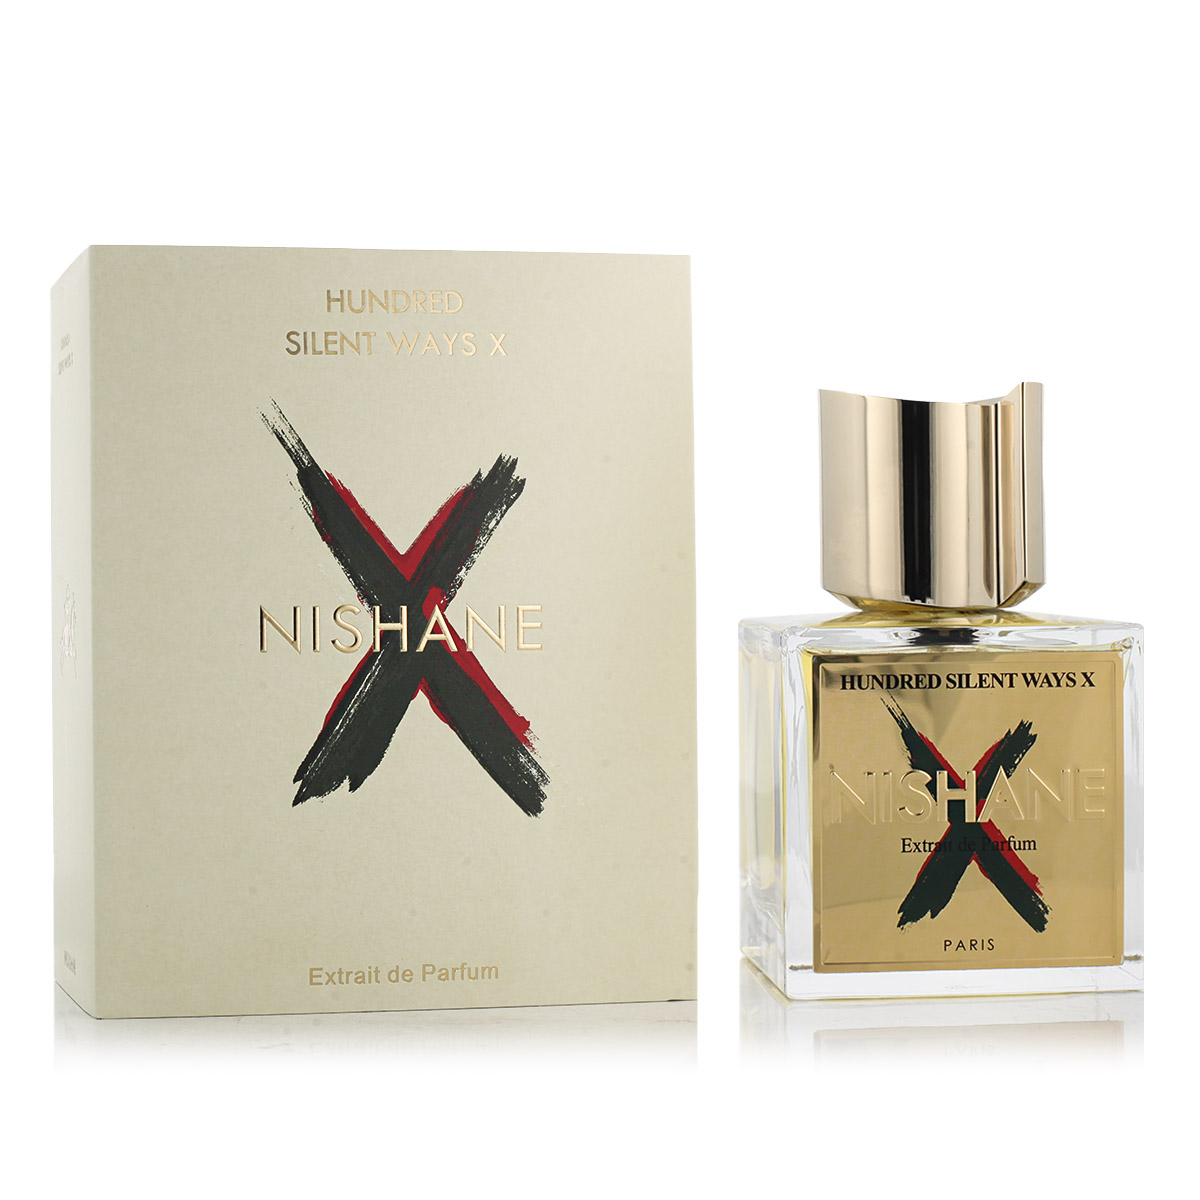 Nishane Hundred Silent Ways X 5 ml NIŠINIAI kvepalų mėginukas (atomaizeris) Unisex Parfum